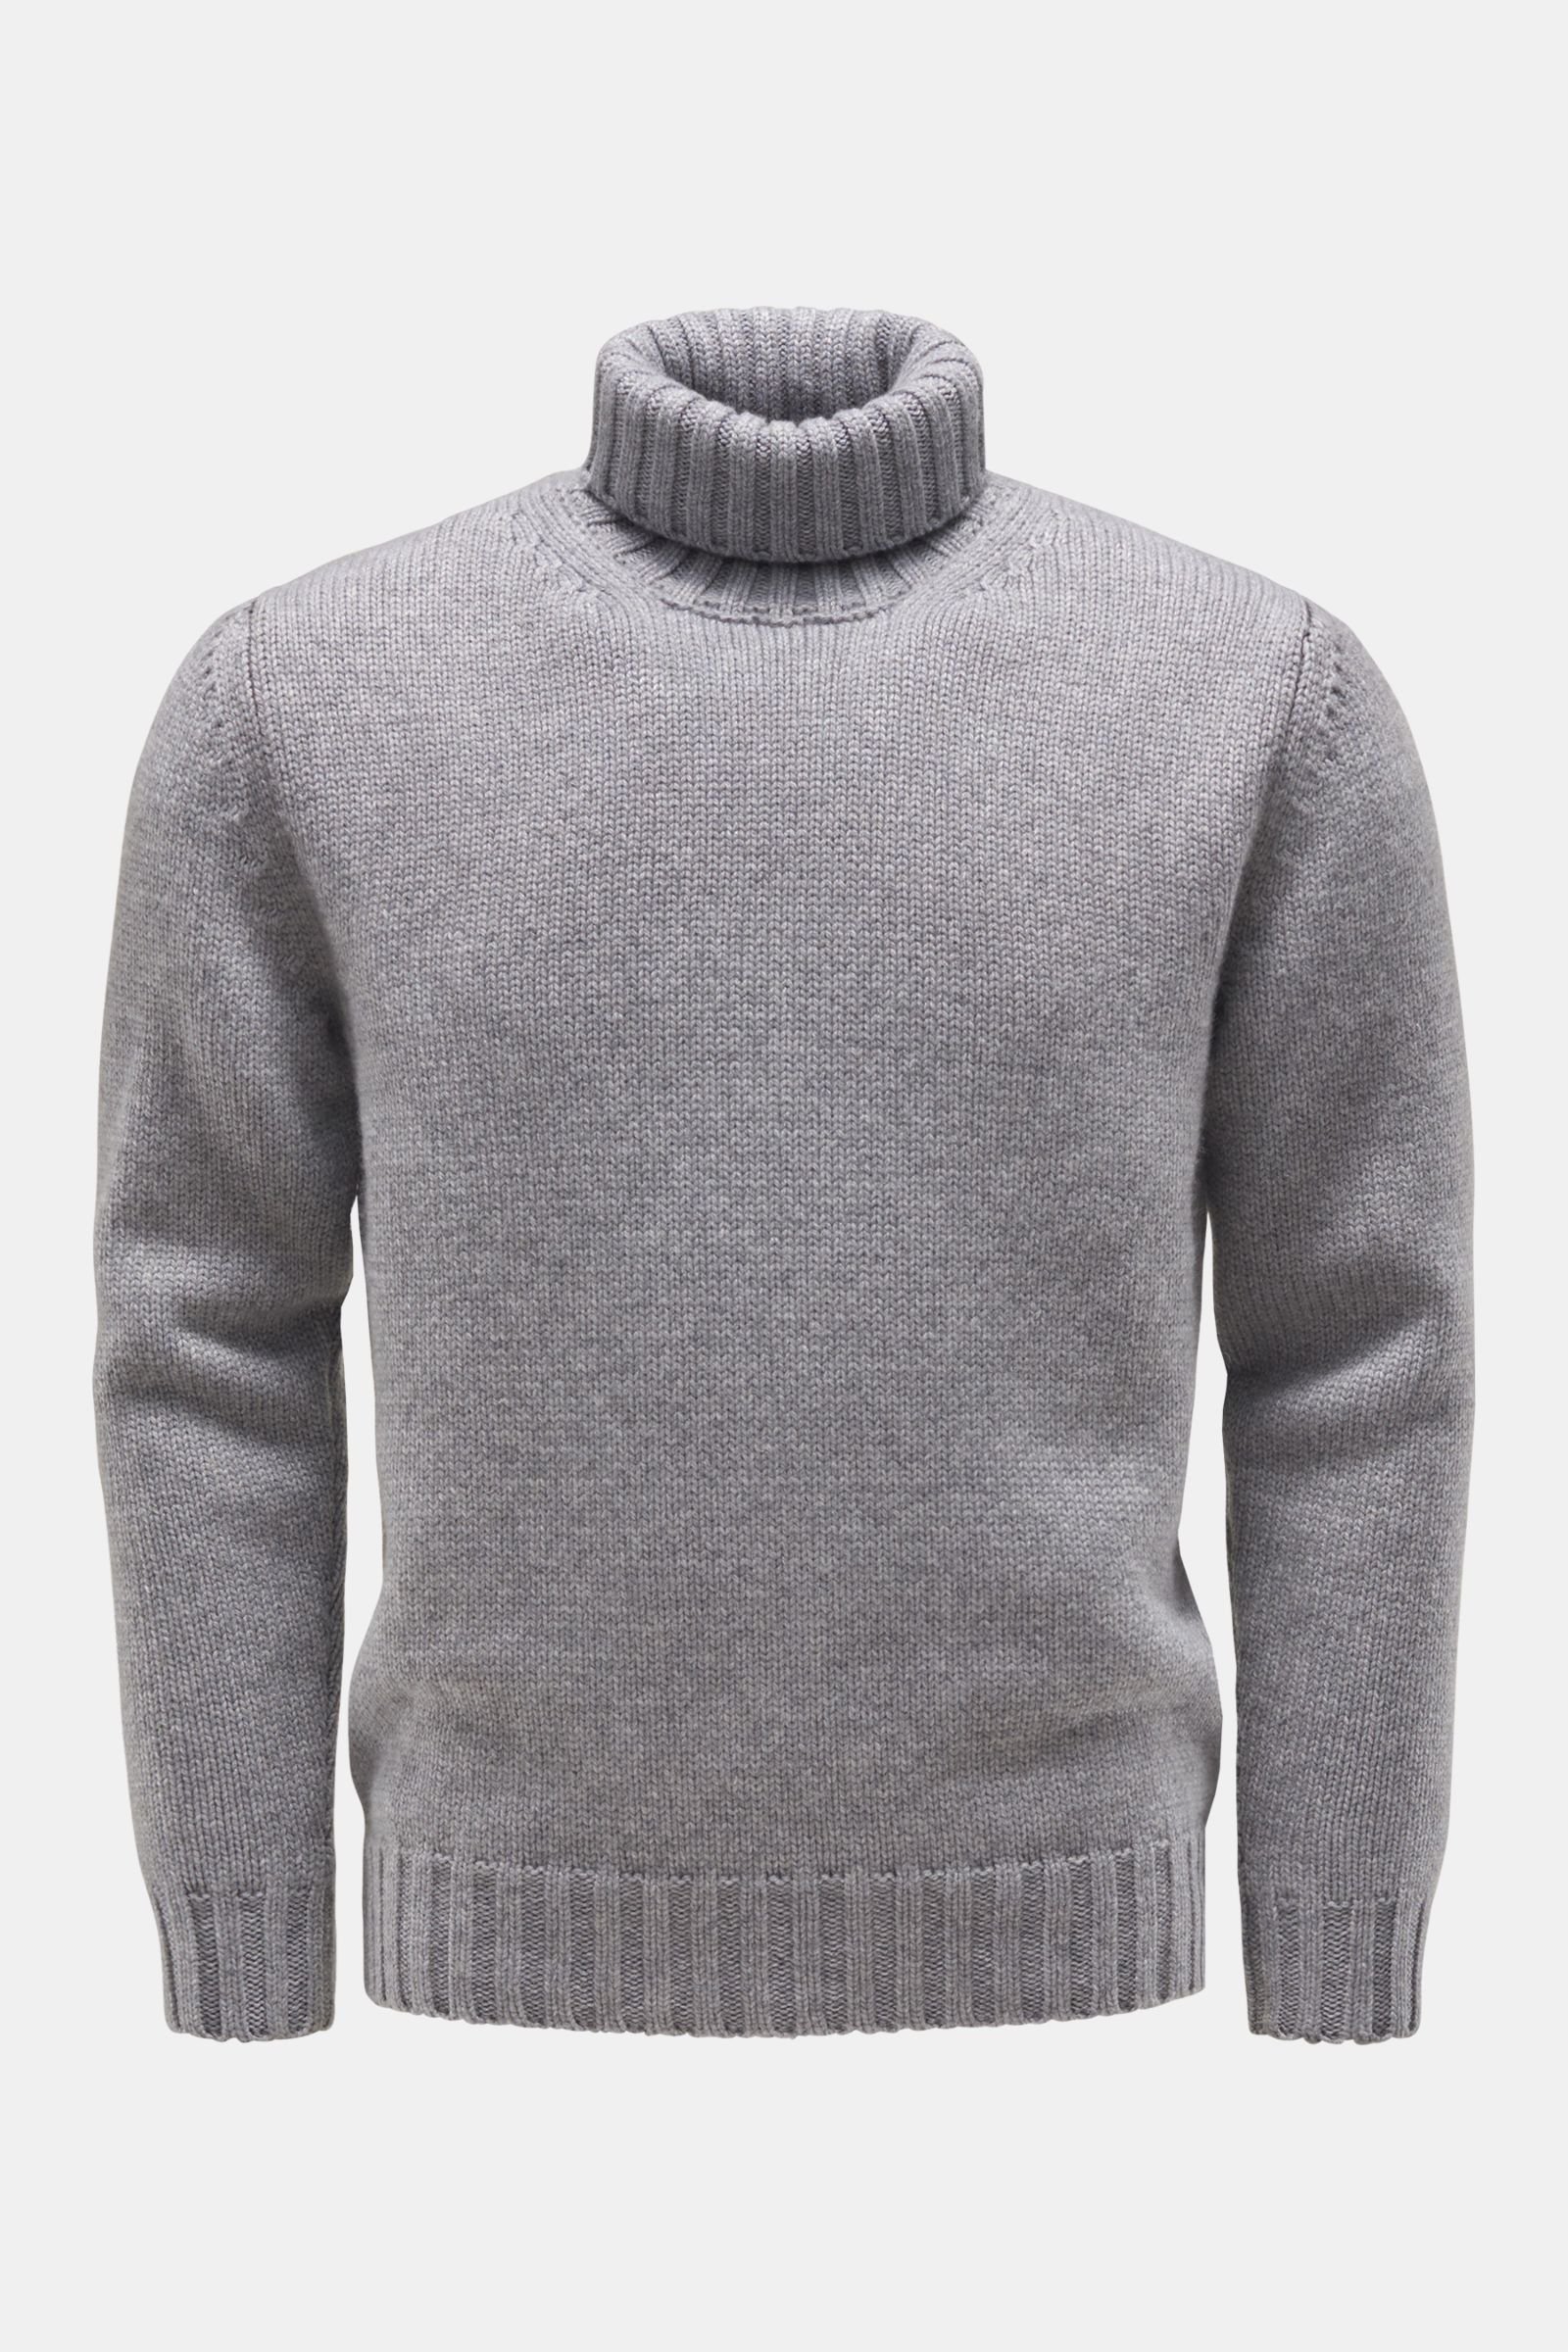 Cashmere turtleneck jumper grey